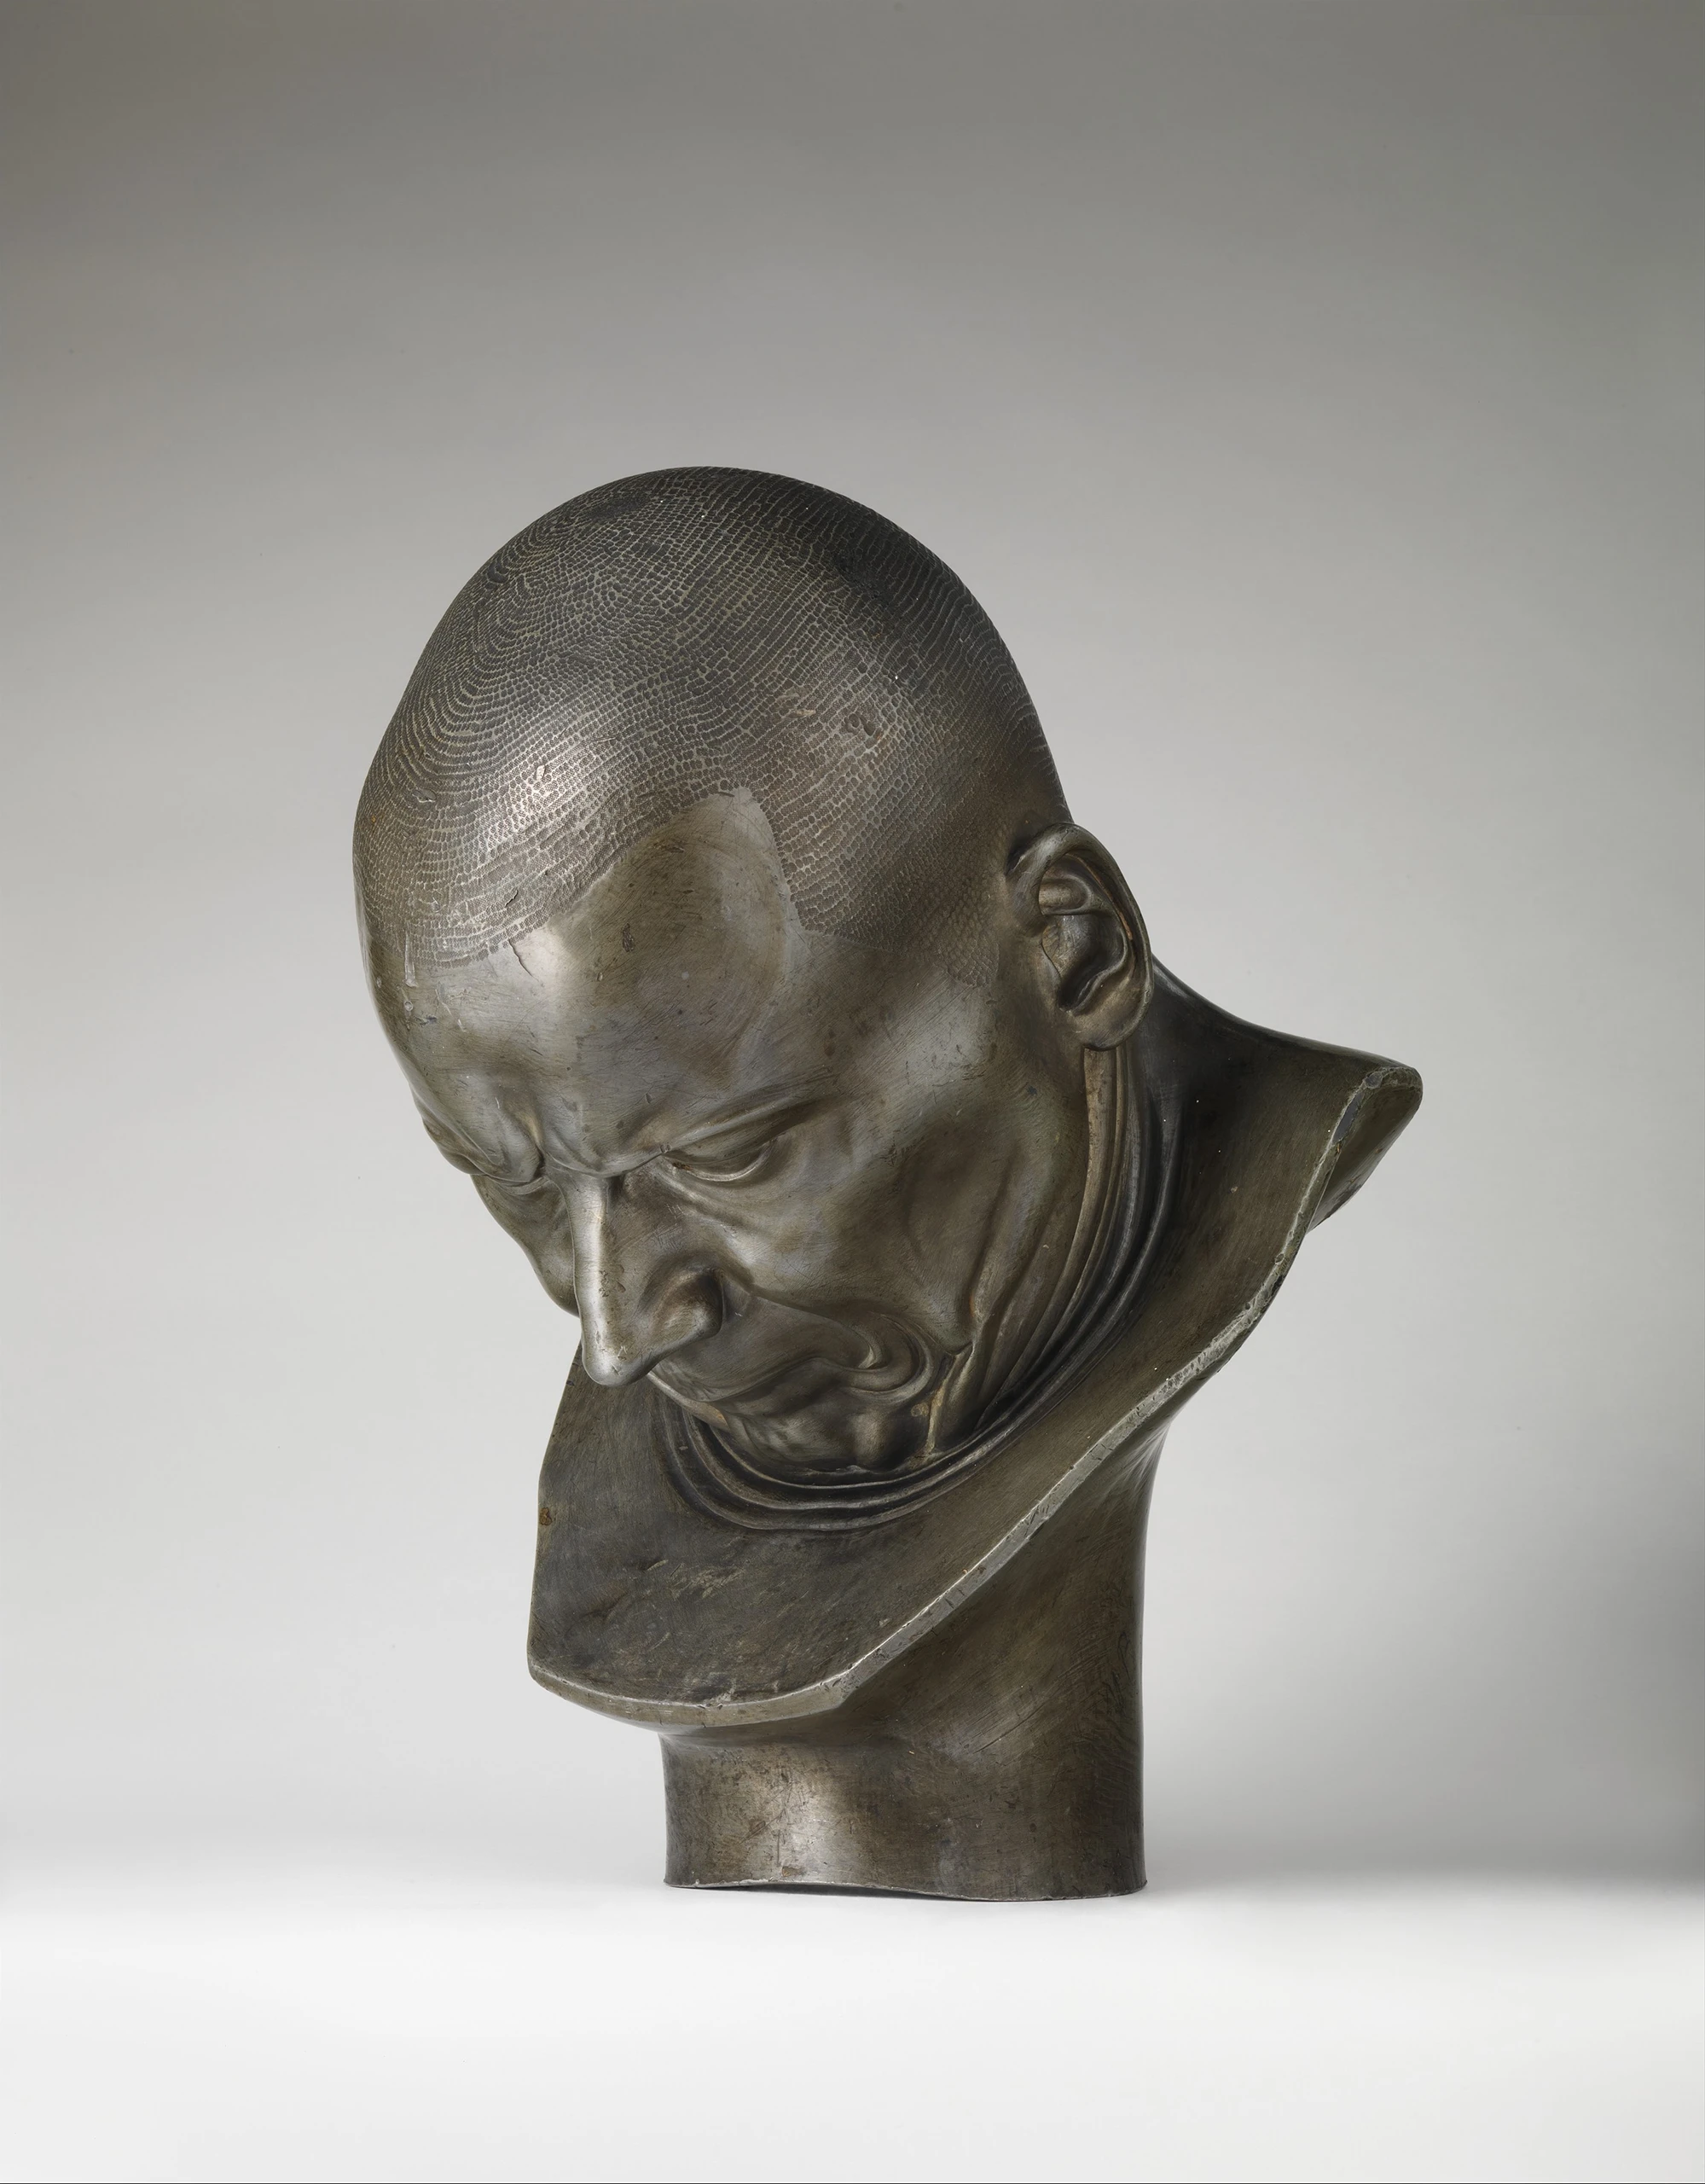 Skulptur “Ein Heuchler und Verleumder” von Franz Xaver Messerschmidt